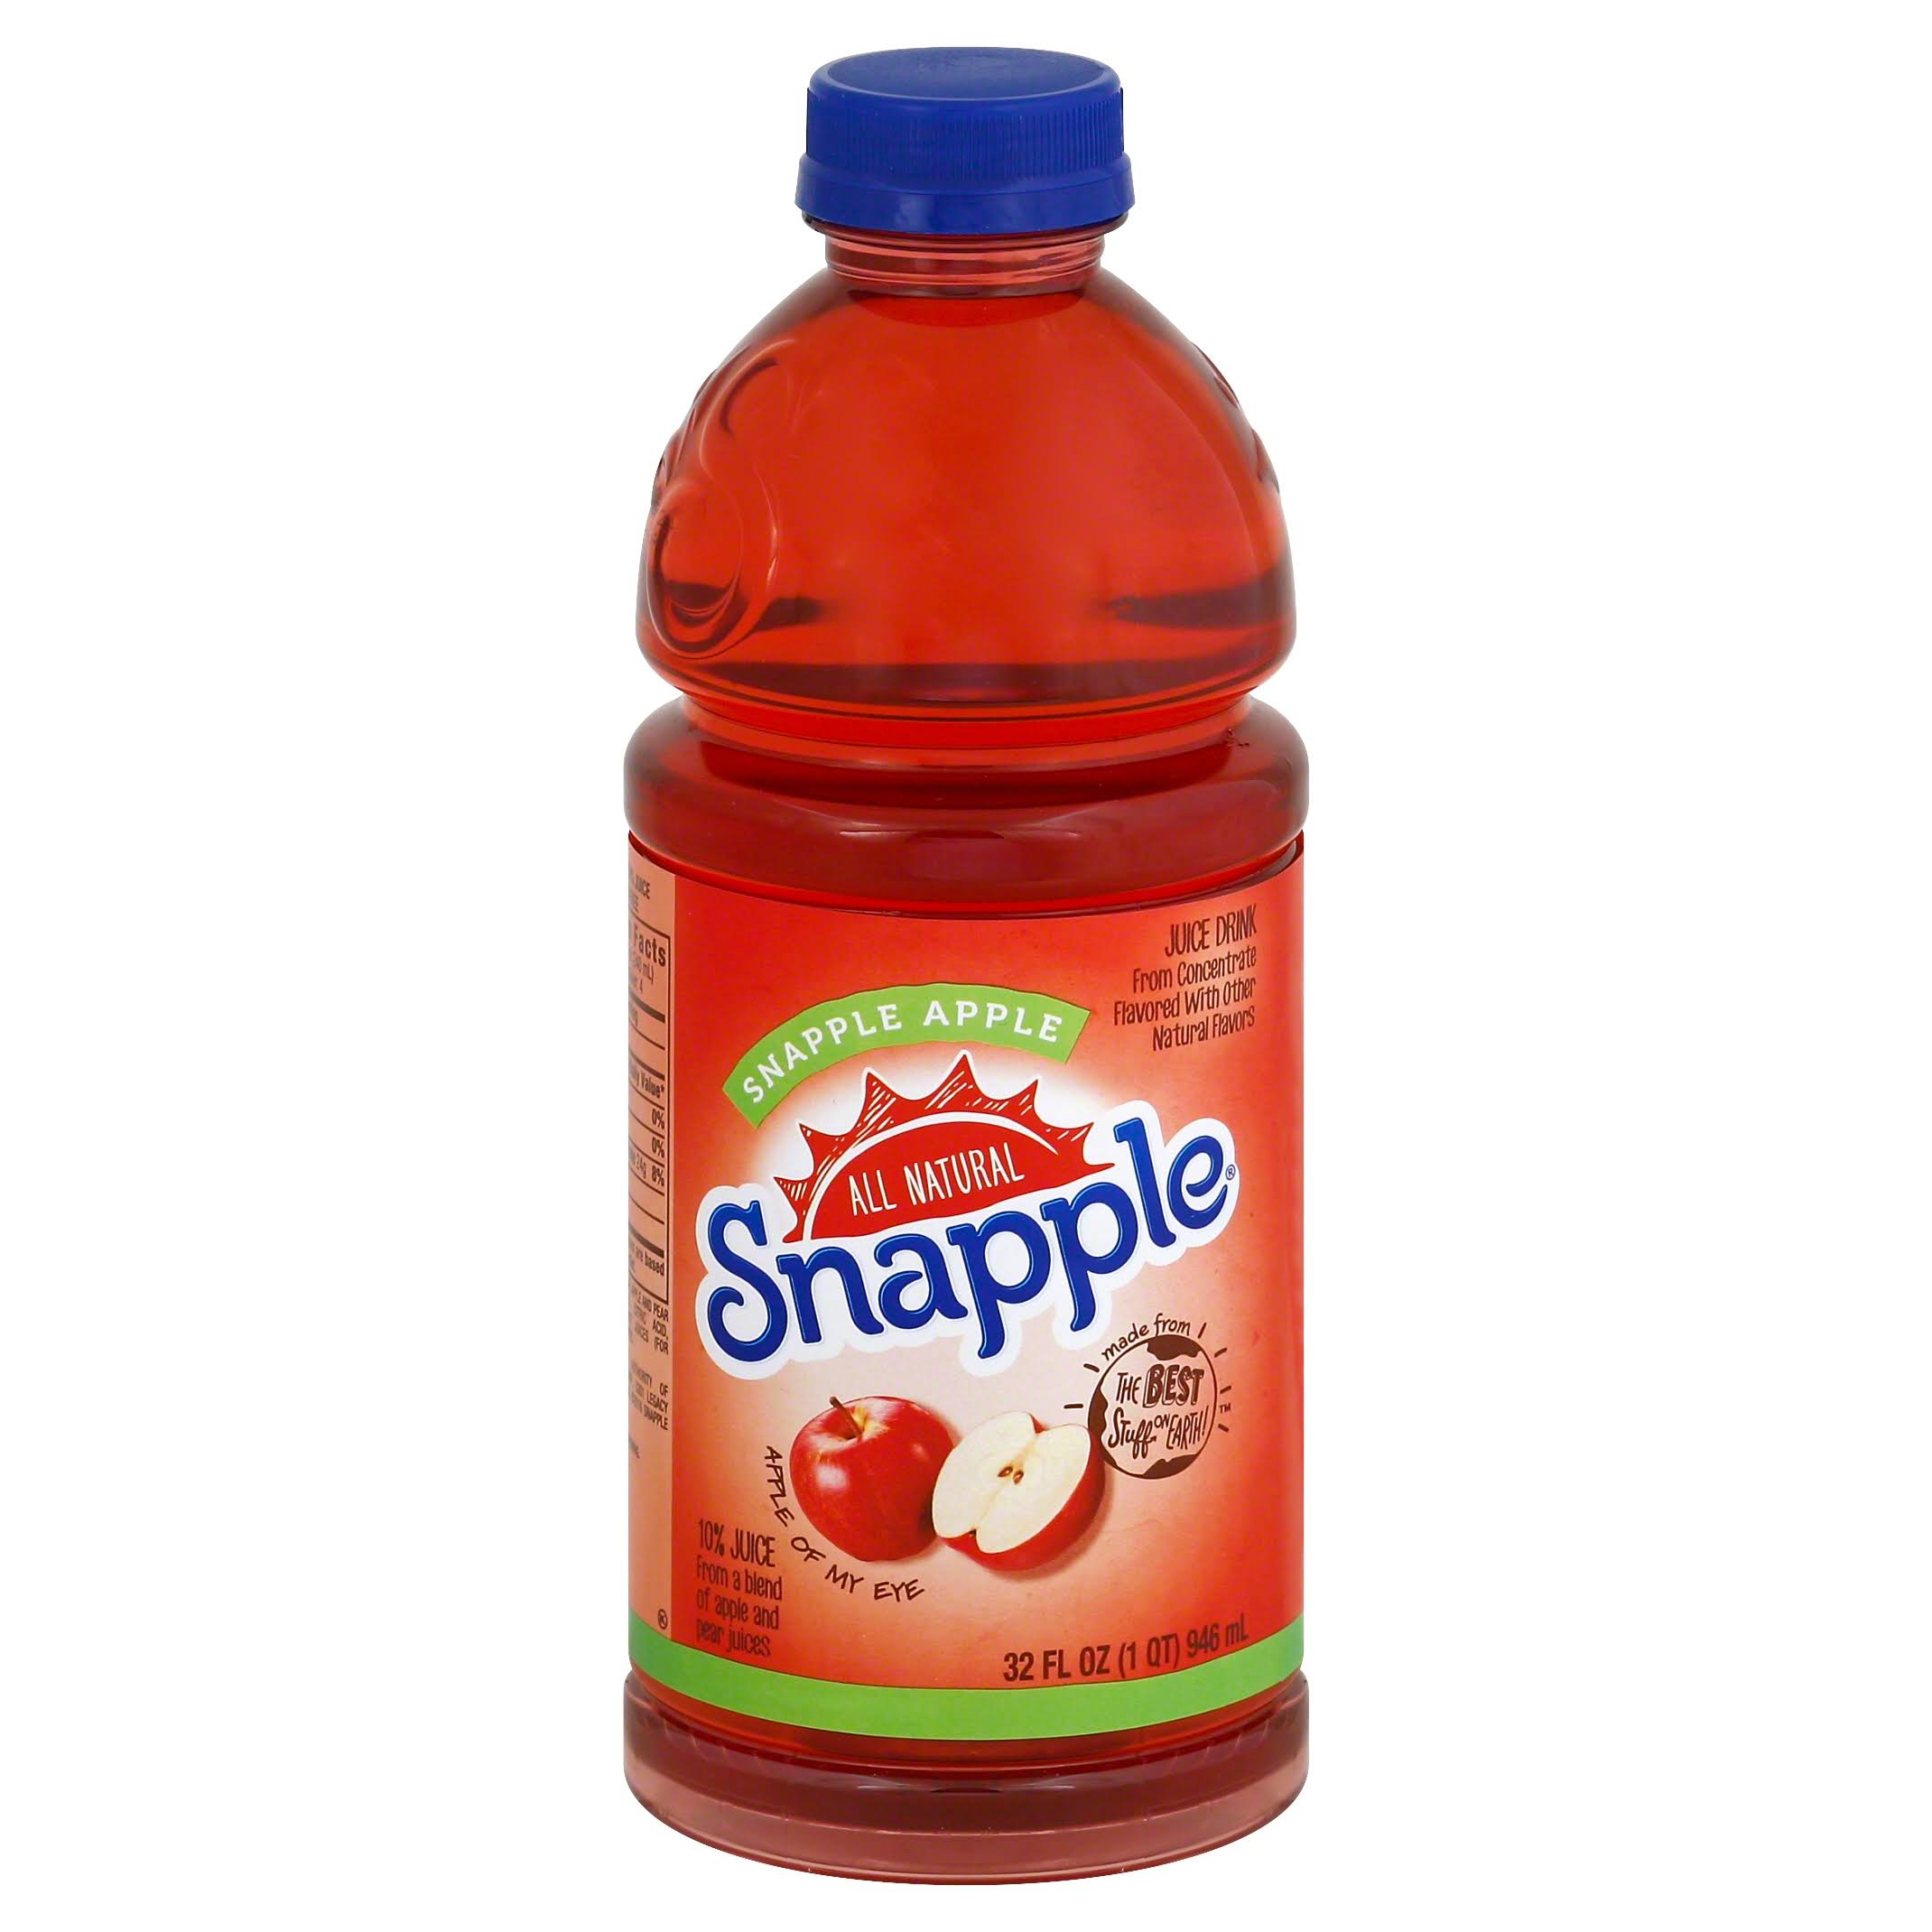 Snapple Juice Drink, Snapple Apple - 32 fl oz